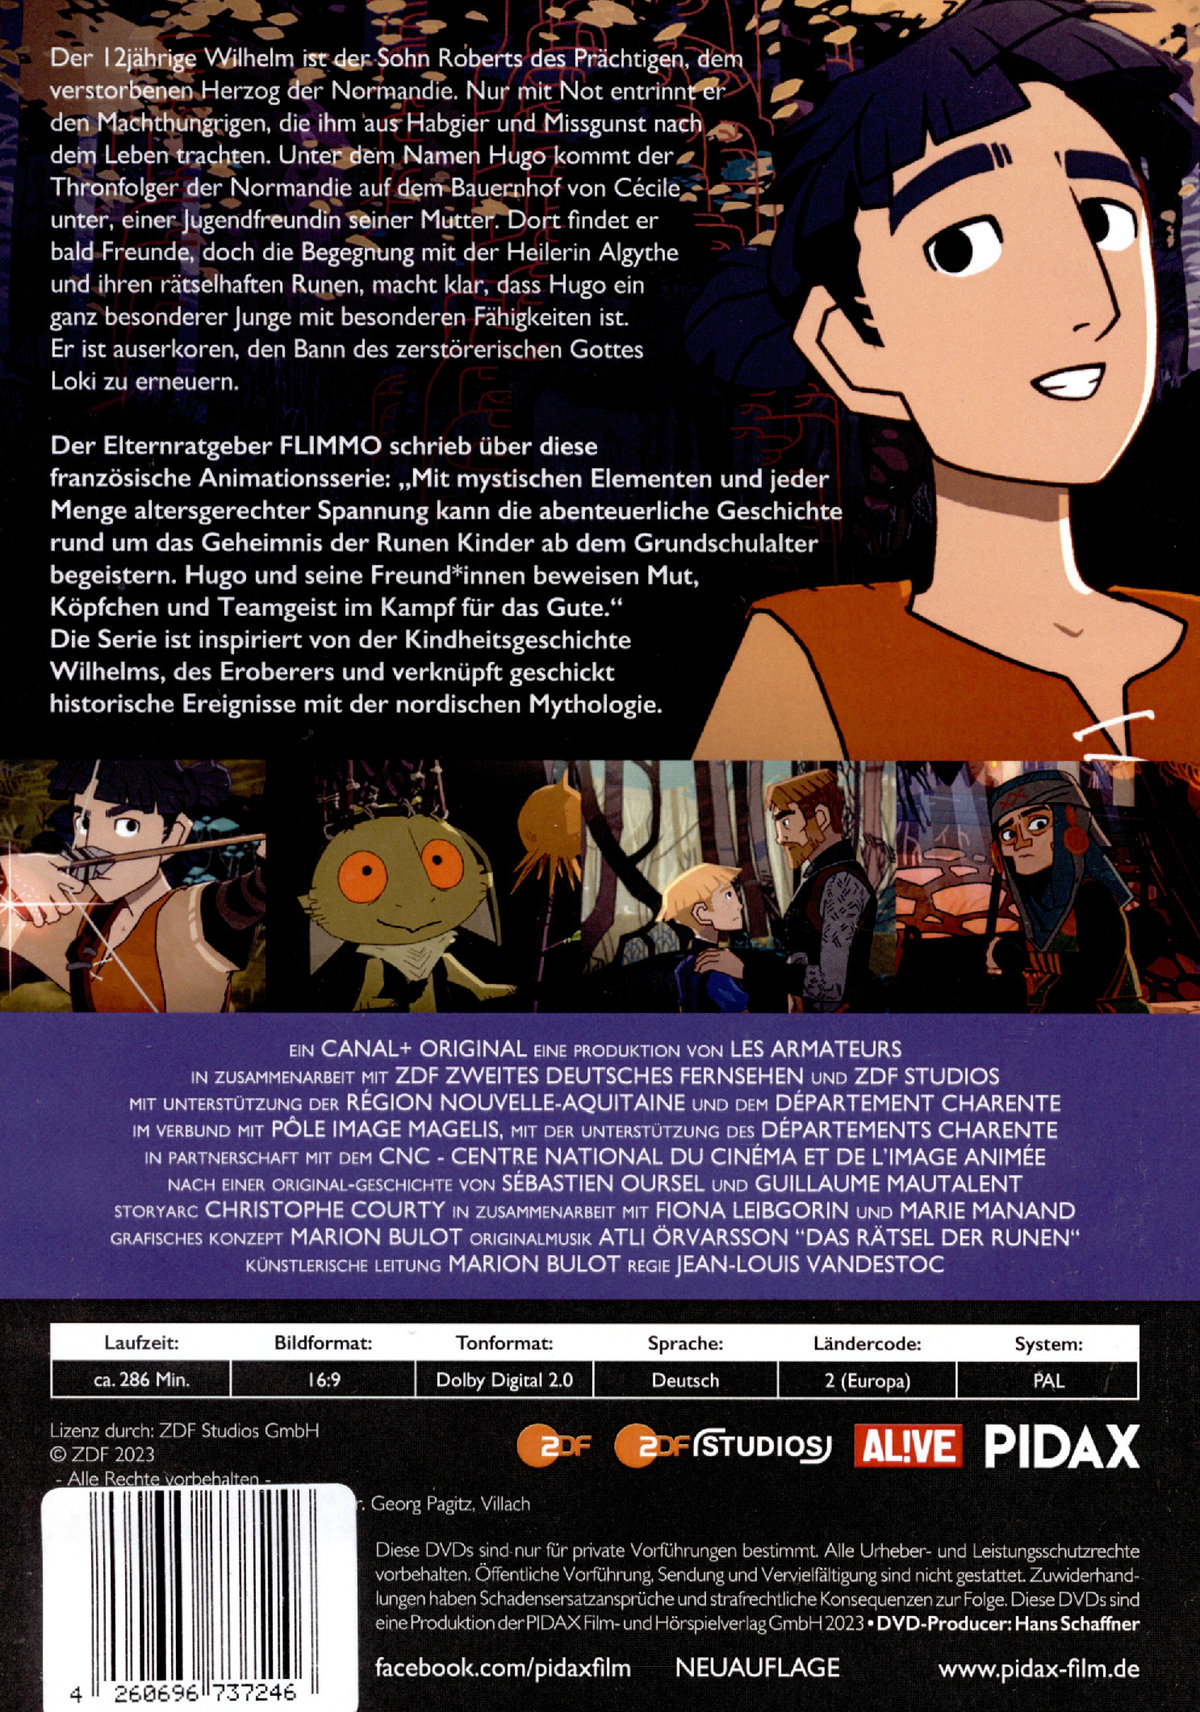 Das Rätsel der Runen, Vol. 1 (überarbeitete Fassung) / Die ersten 13 Folgen der Fantasy-Zeichentrickserie von den Machern von DAS GEHEIMNIS VON KELLS (Pidax Animation)  [2 DVDs]  (DVD)